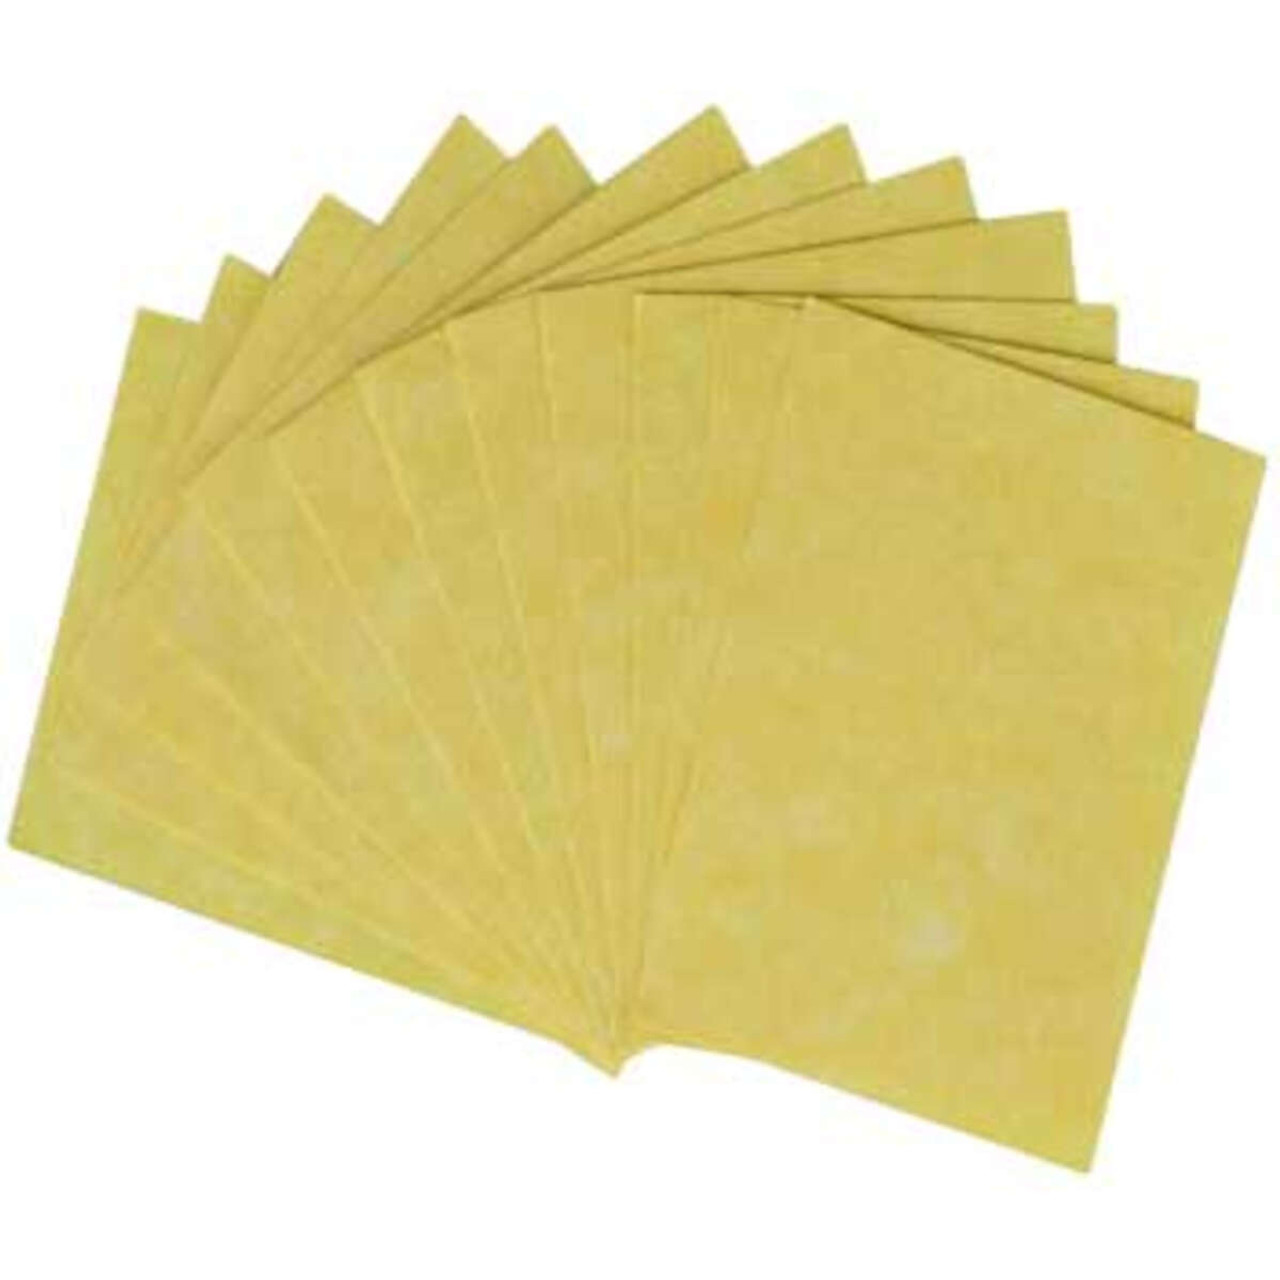 Light Parchment 12 Pack (3" x 4")